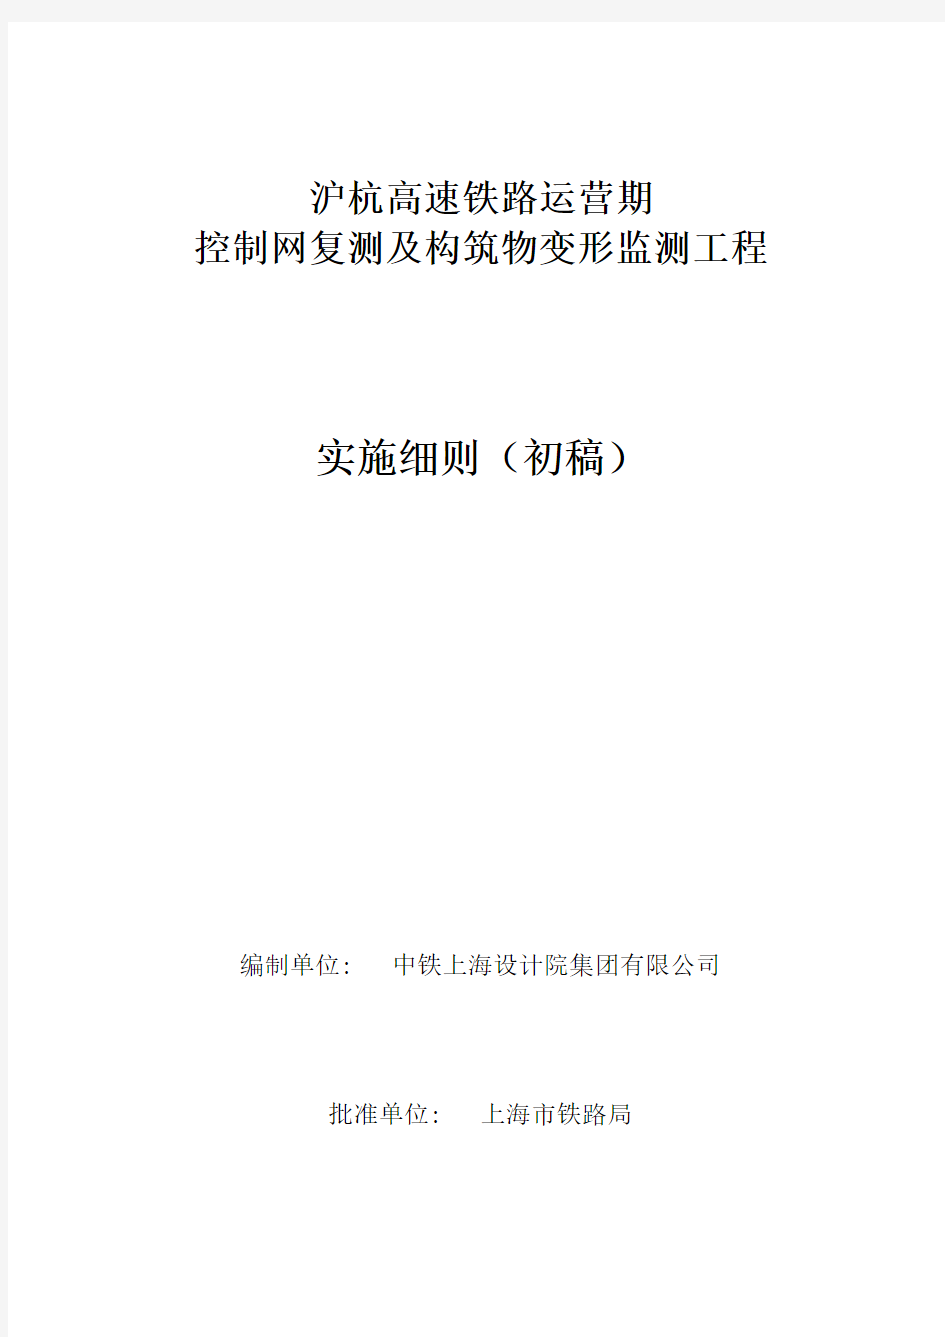 沪杭控制网复测及变形监测工程实施细则(12.14修订稿)